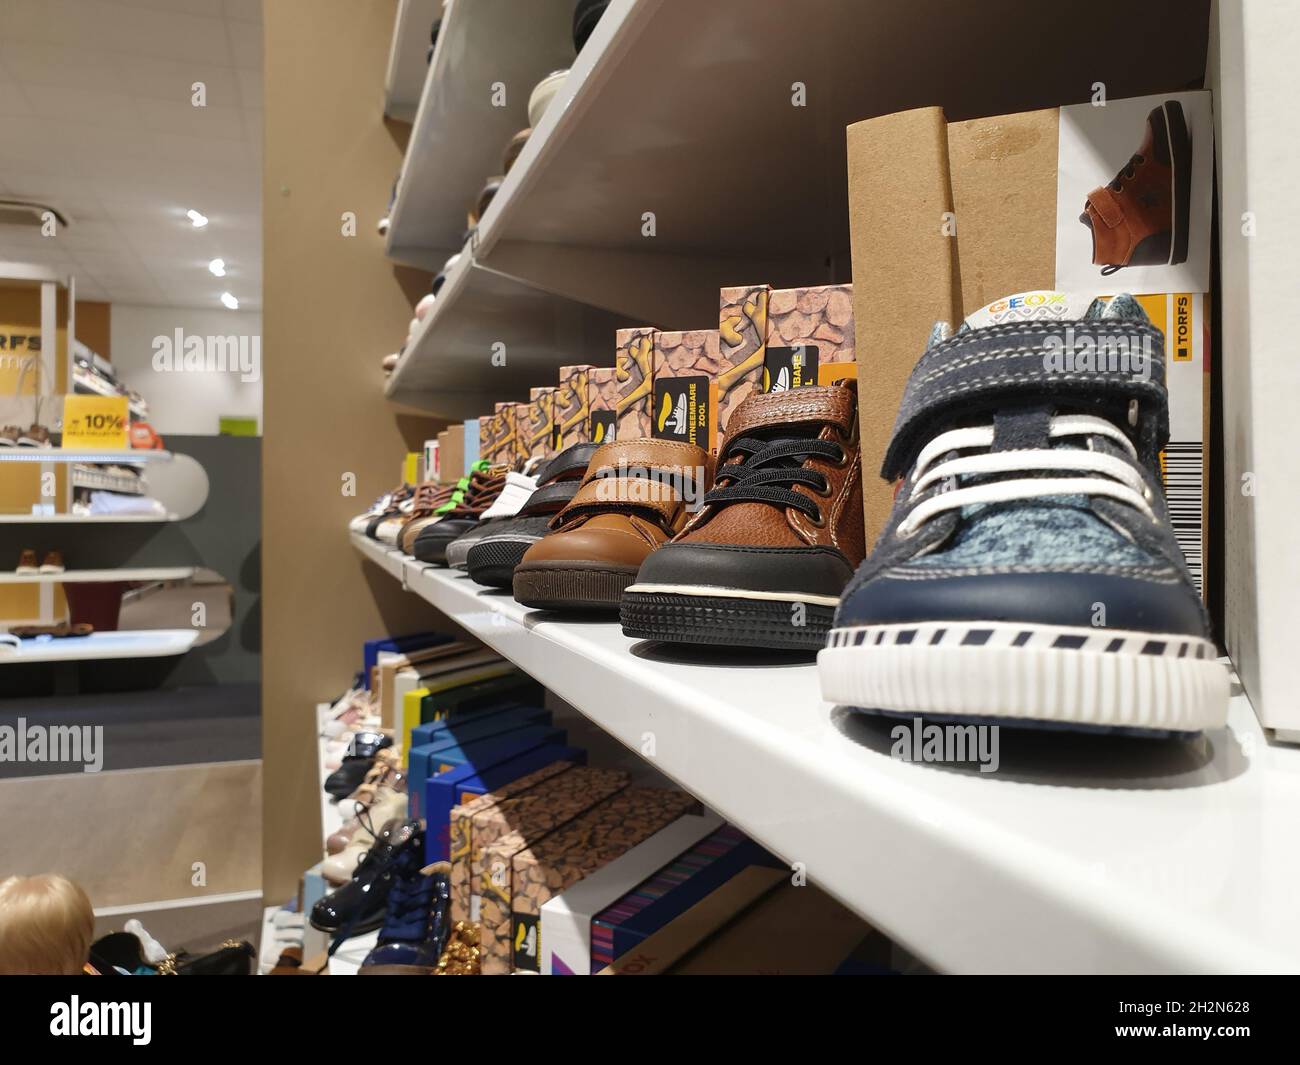 Hoogstraten, Belgique - 2 octobre 2021 : un portrait de chaussures pour  tout-petits debout sur une étagère dans un magasin de chaussures en Belgique.Les  chaussures pour enfants sont dotées d'une fermeture à